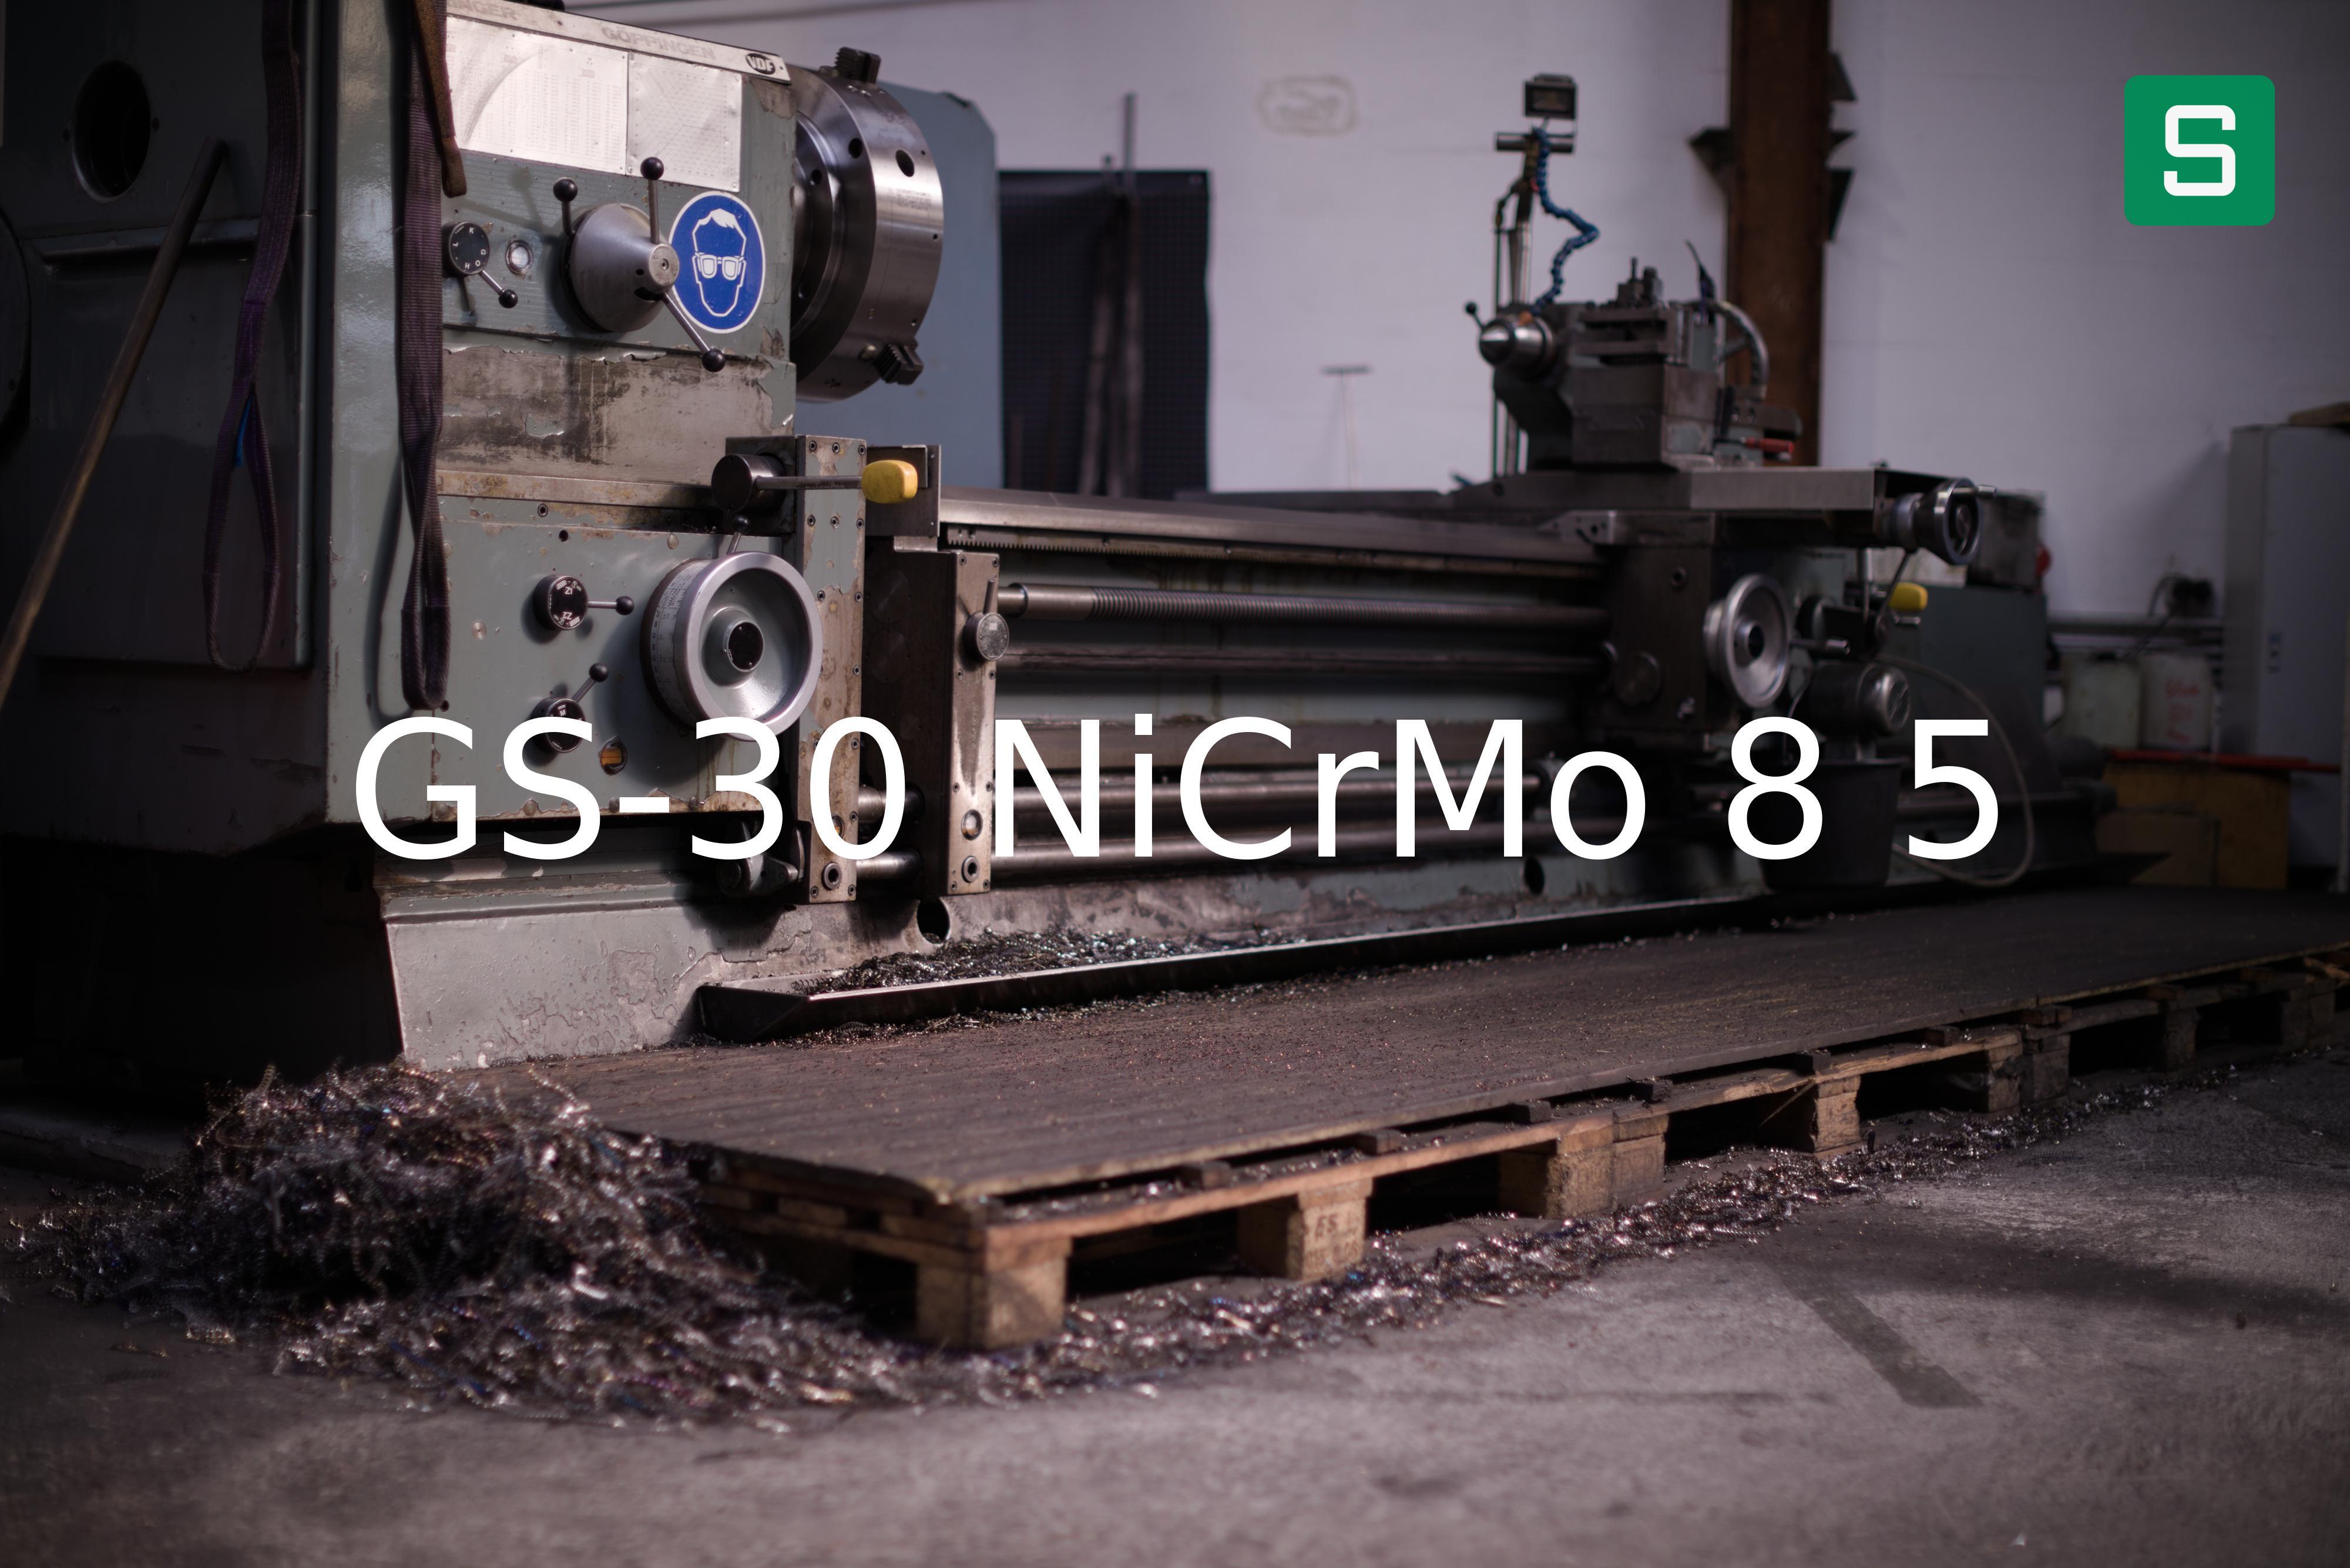 Material de Acero: GS-30 NiCrMo 8 5